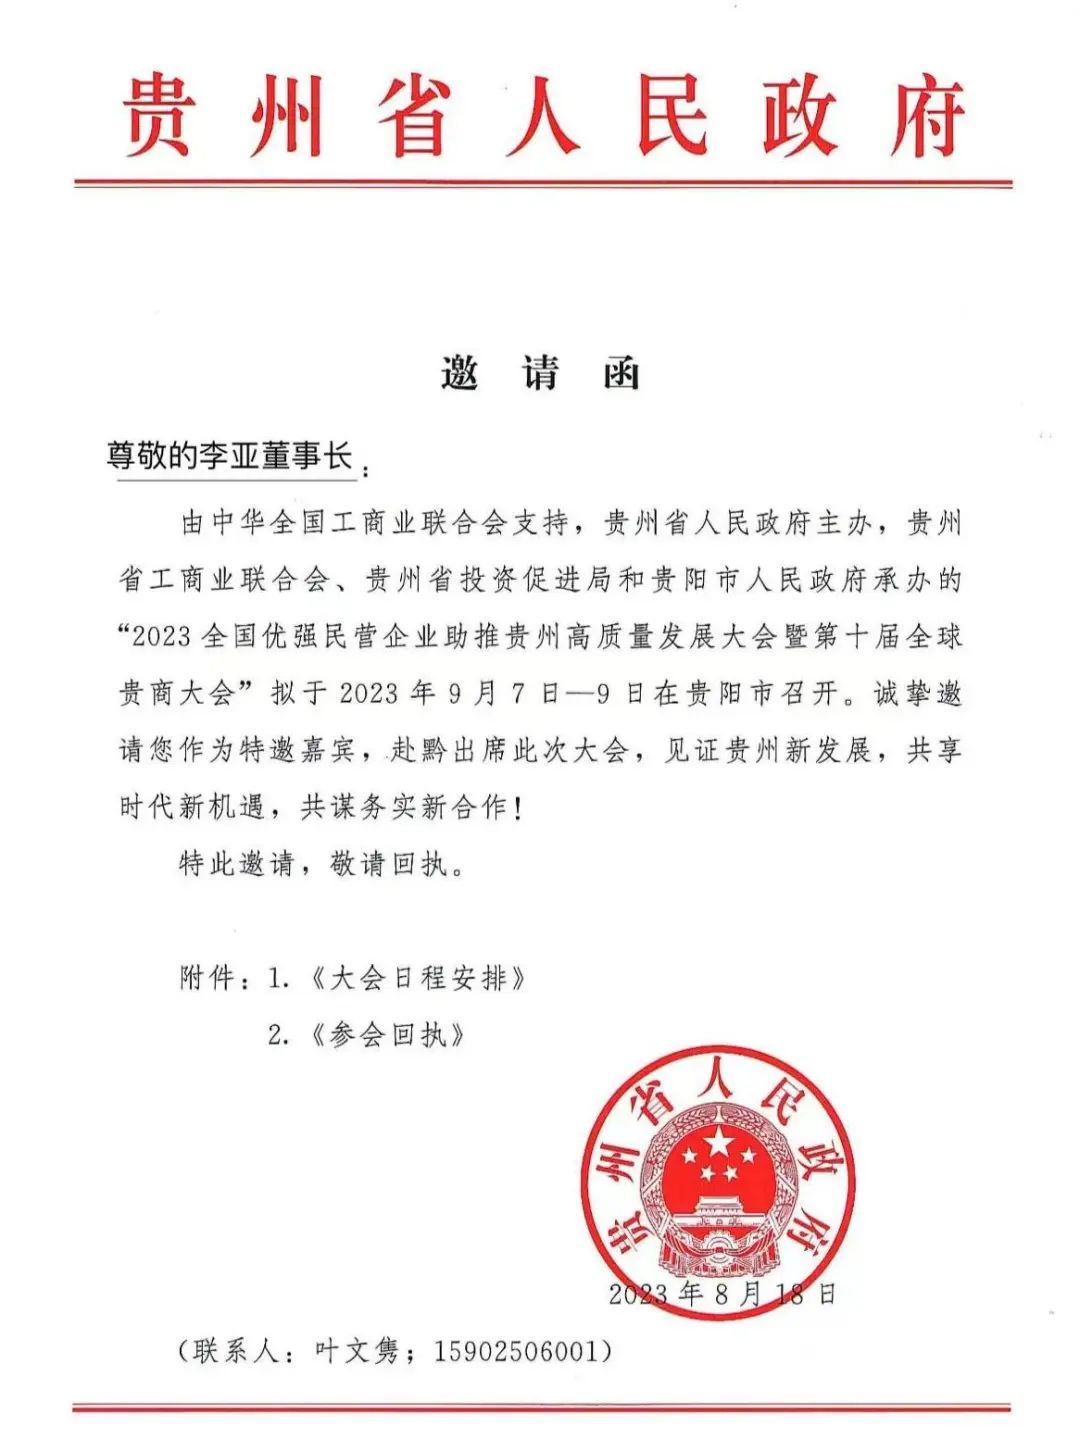 【简讯】Z6尊龙官网董事长受邀将出席贵州省十届全球贵商大会